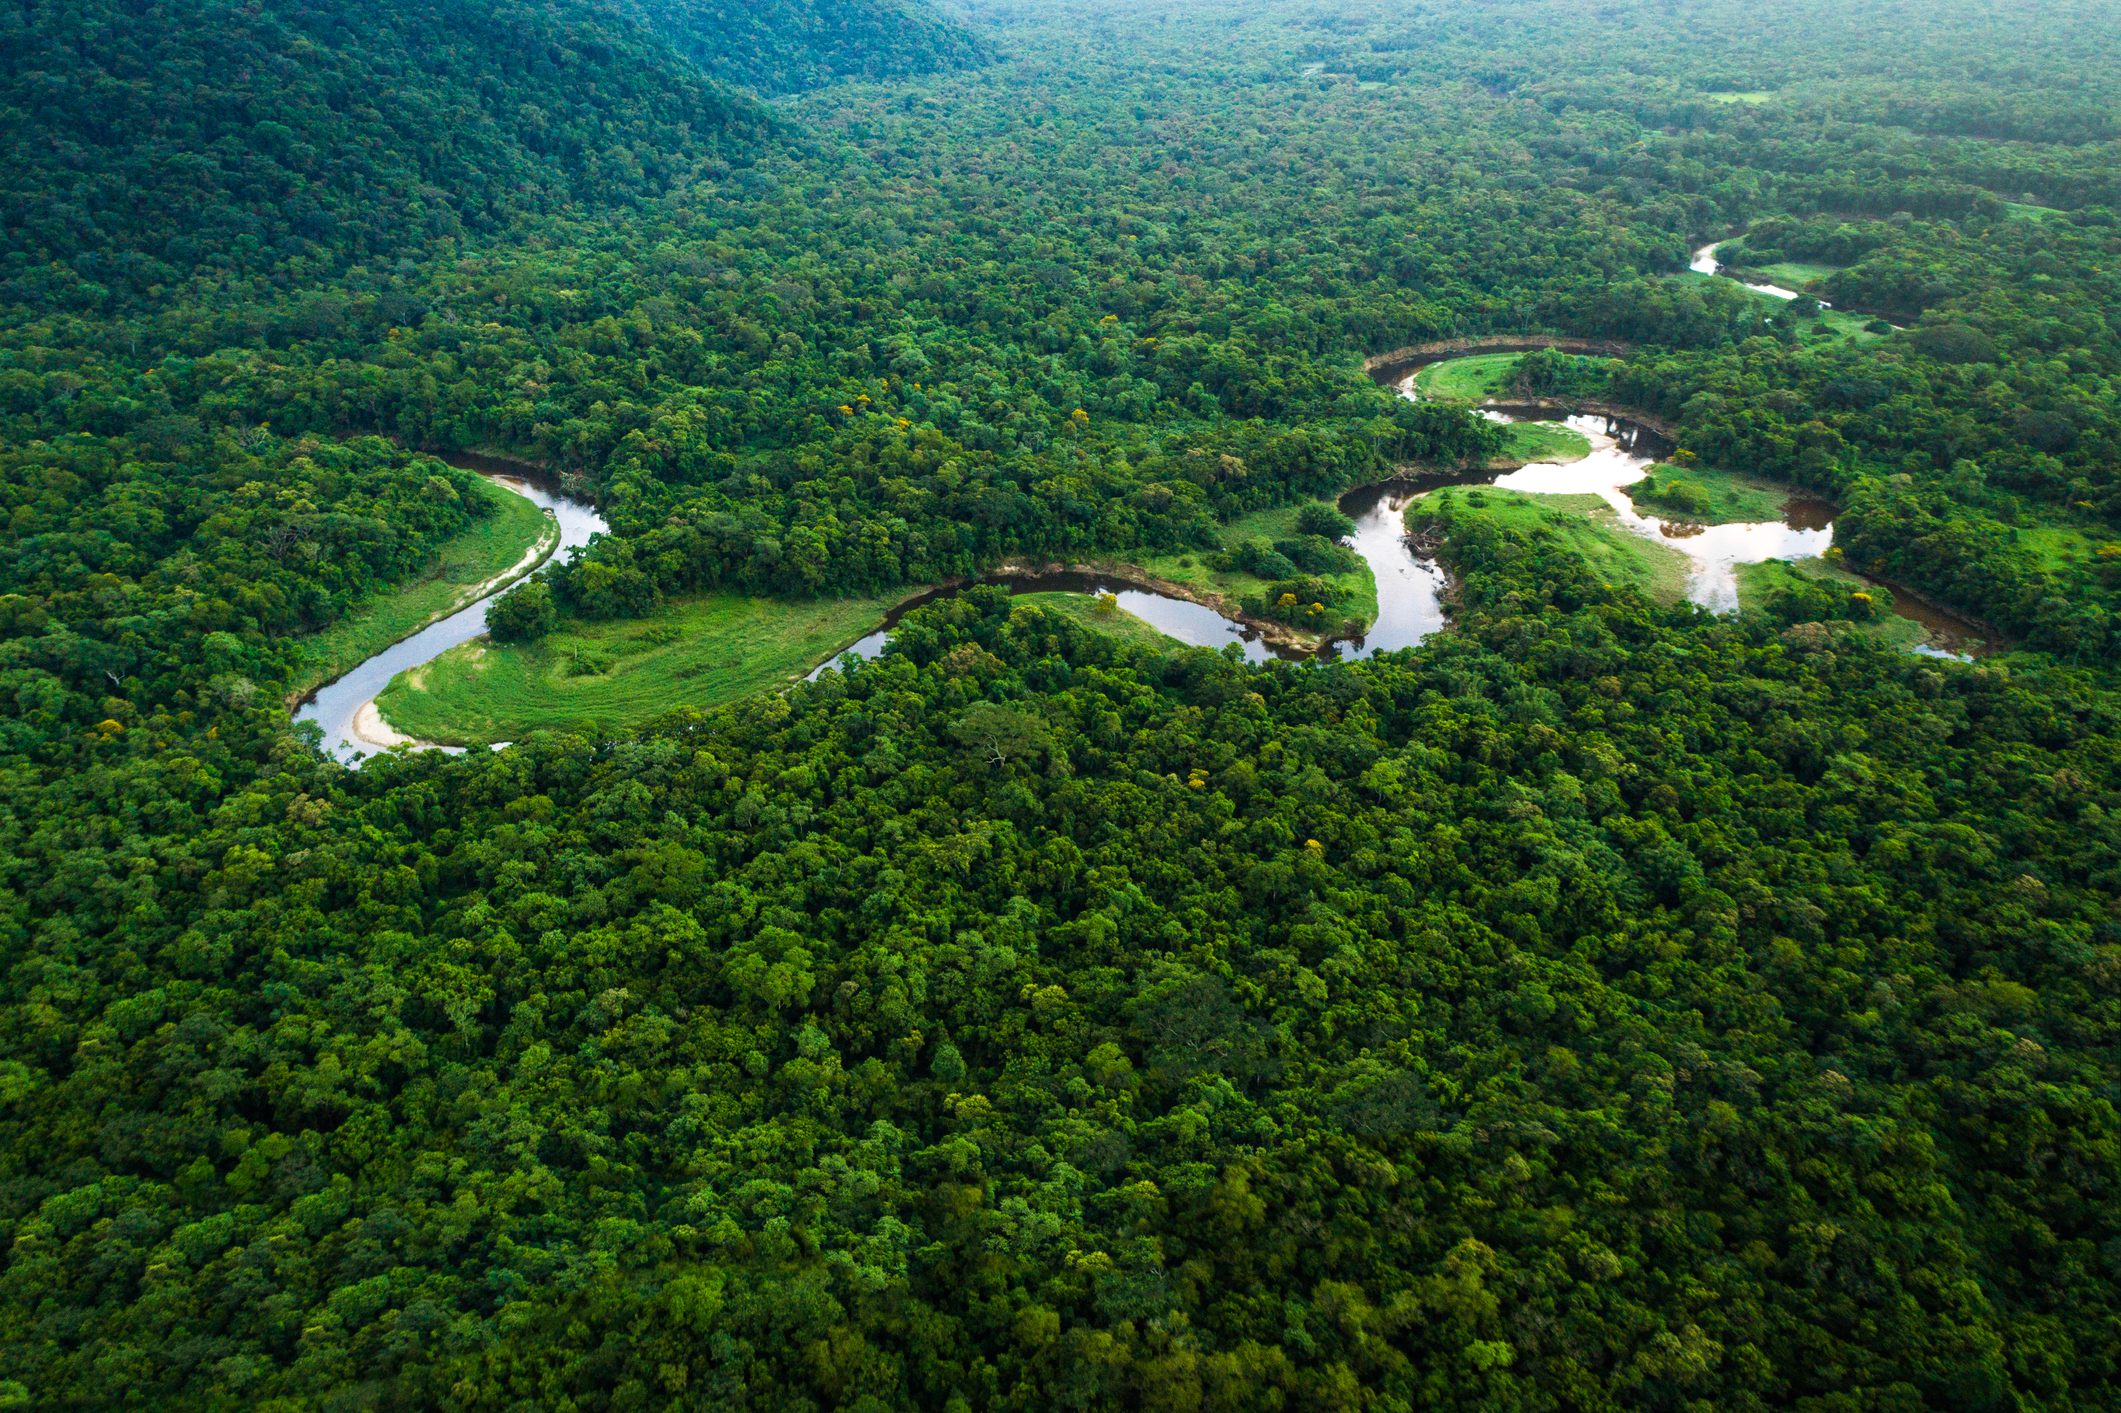 Джунгли бразилии. Бразилия тропические леса Сельва. Гвианская Амазония национальный парк. Тропические леса амазонки в Бразилии. Сельва амазонки Бразилия.